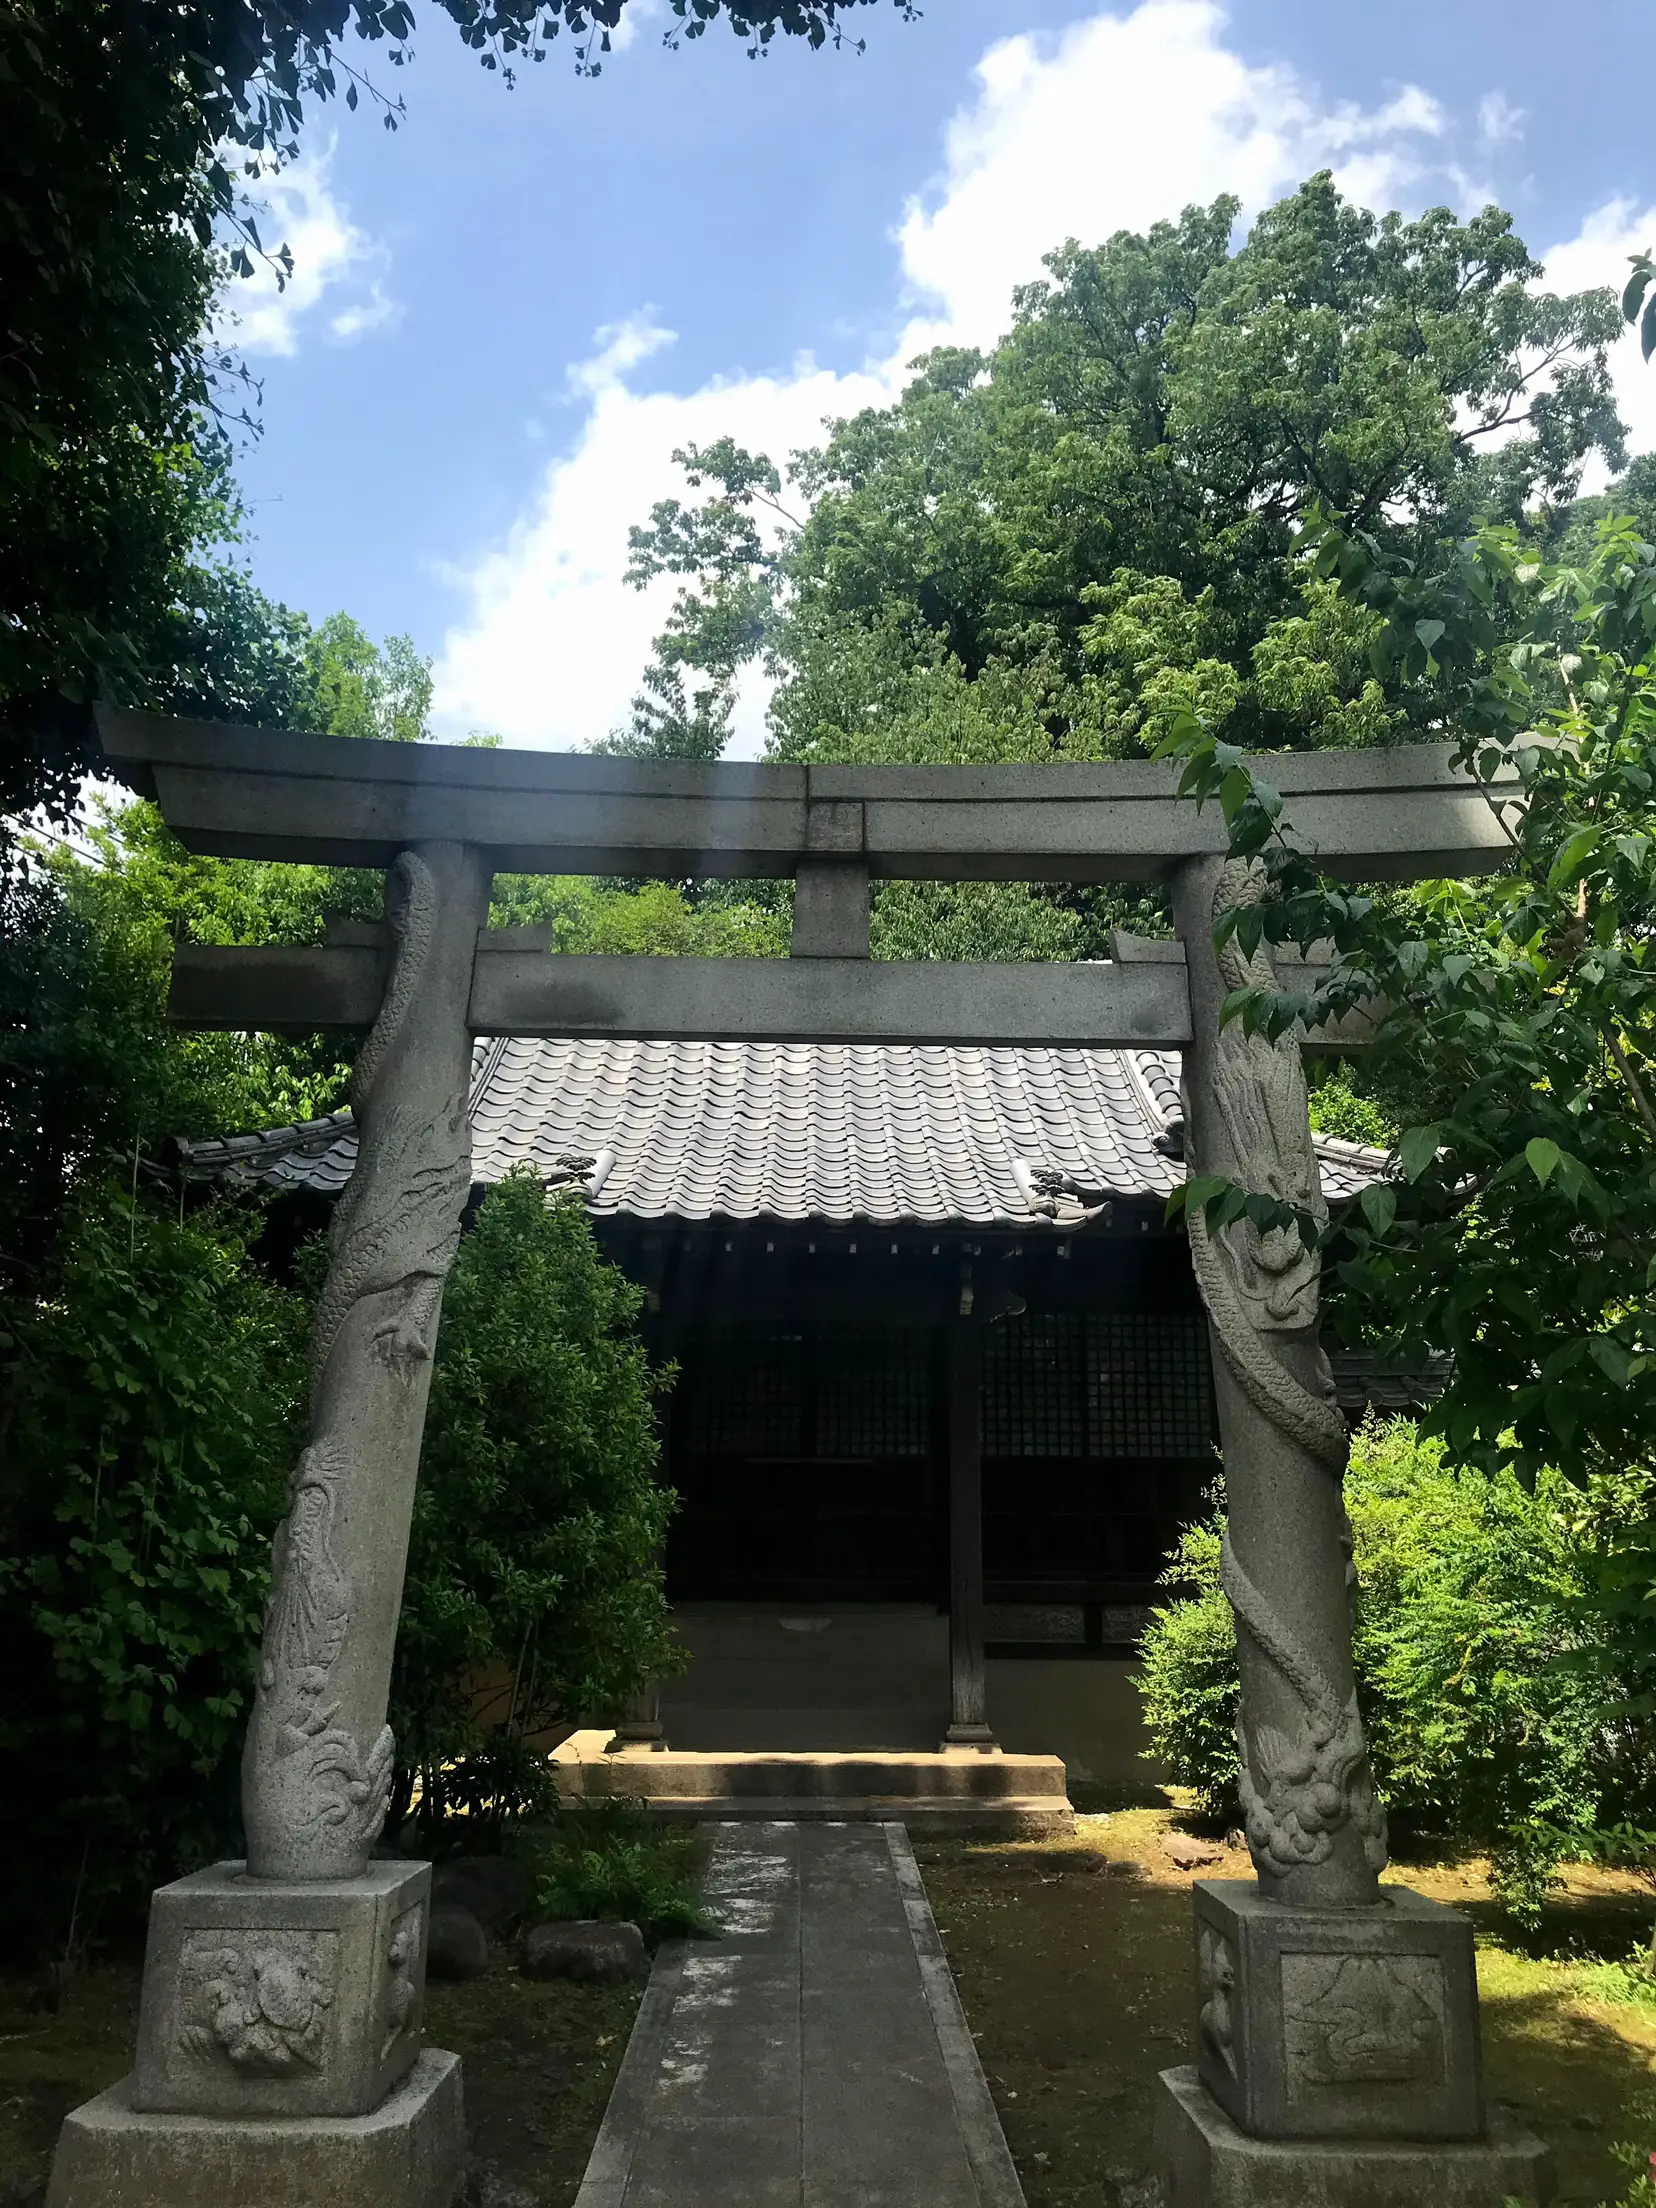 高円寺の氷川神社⛩の近くのお寺 | Shino.369が投稿したフォトブック ...